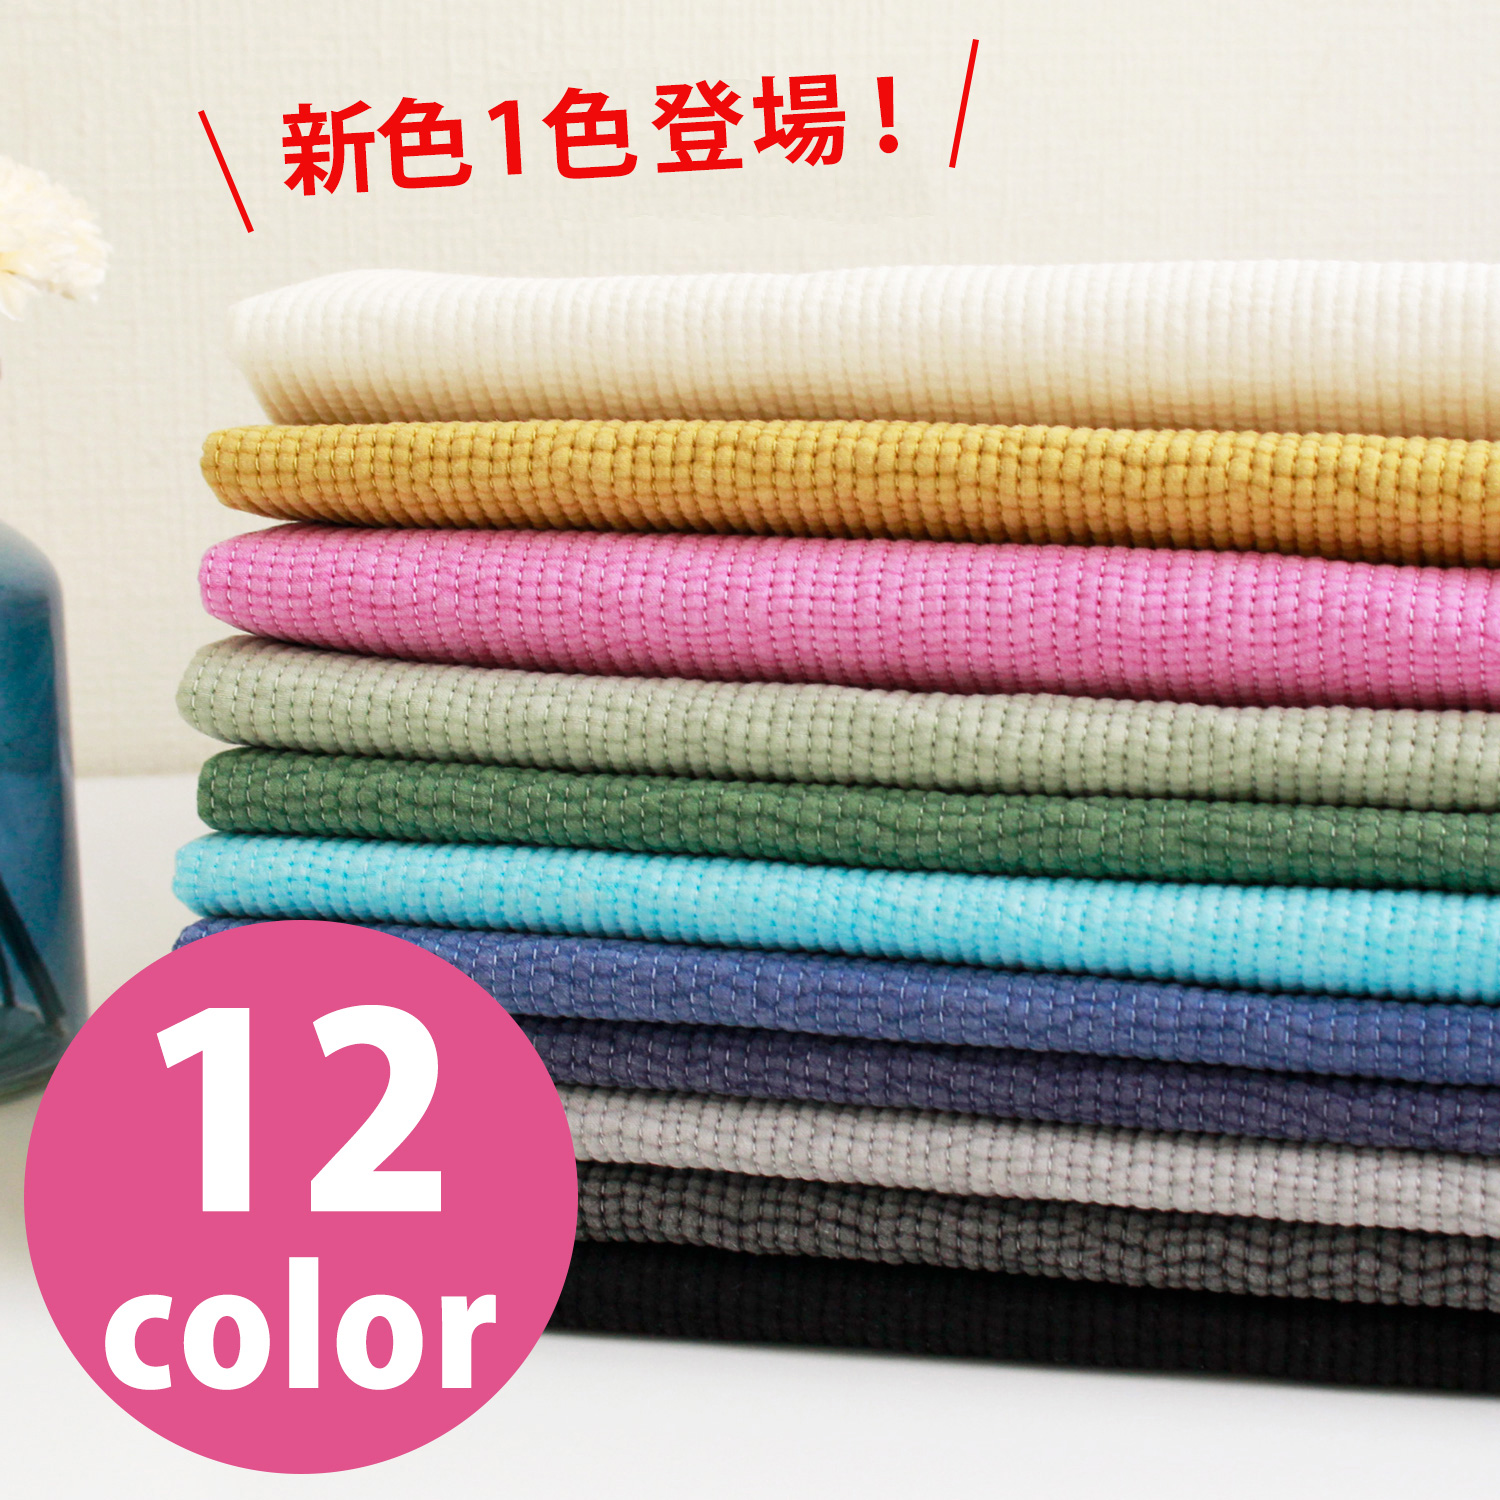 ■NBY303R nubi ヌビ 韓国伝統キルティング生地 巾3mmサイズ 原反約8m乱巻 (巻)